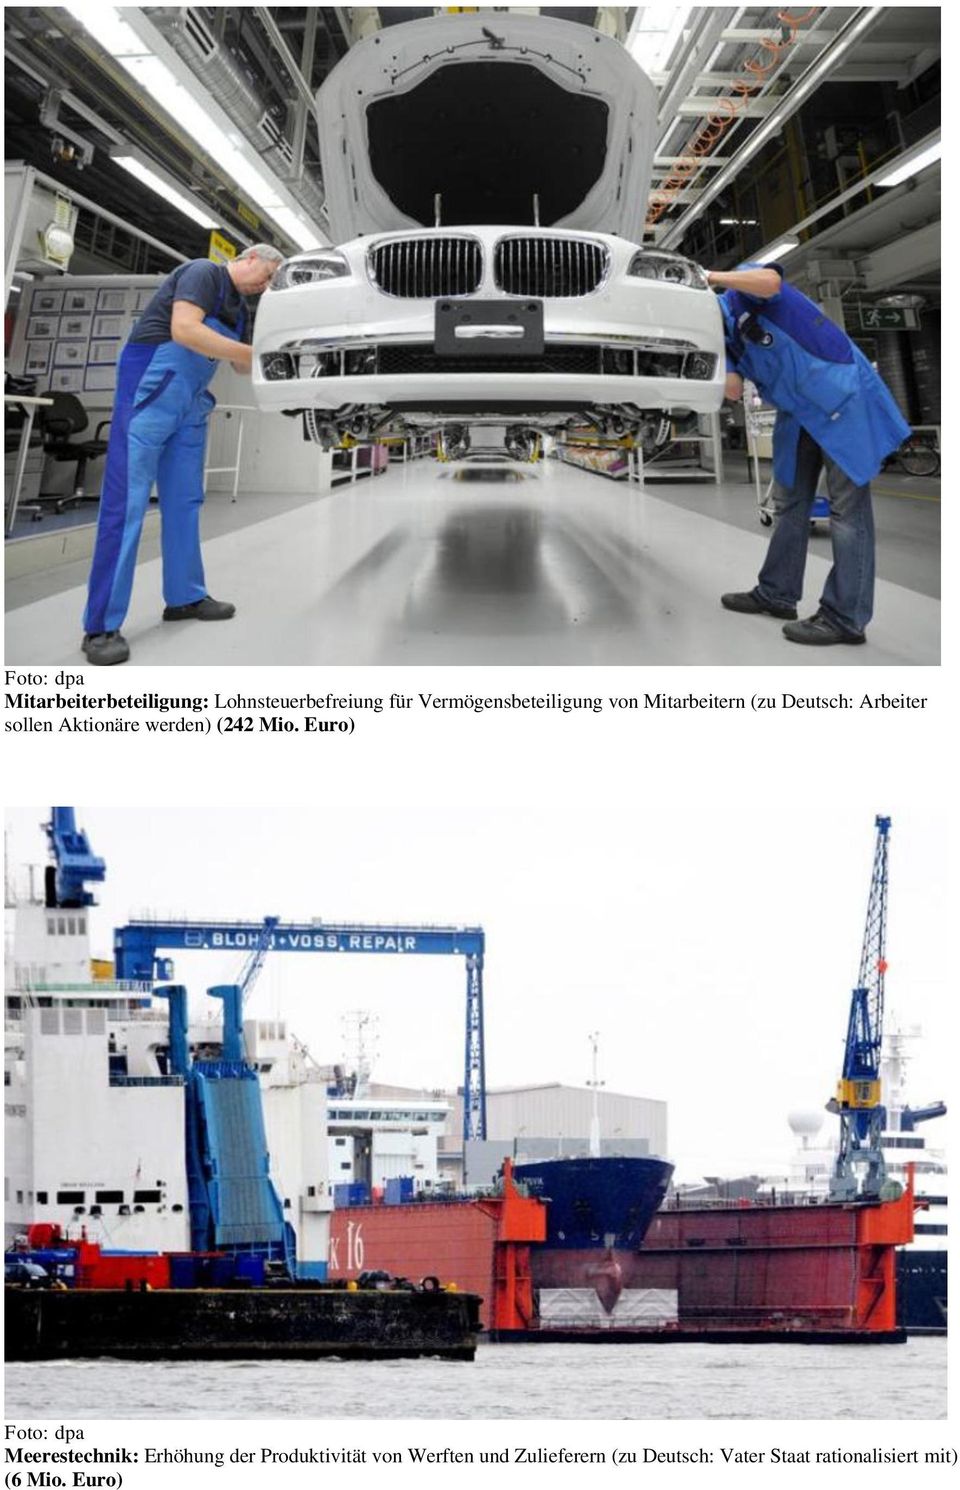 Mio. Euro) Meerestechnik: Erhöhung der Produktivität von Werften und